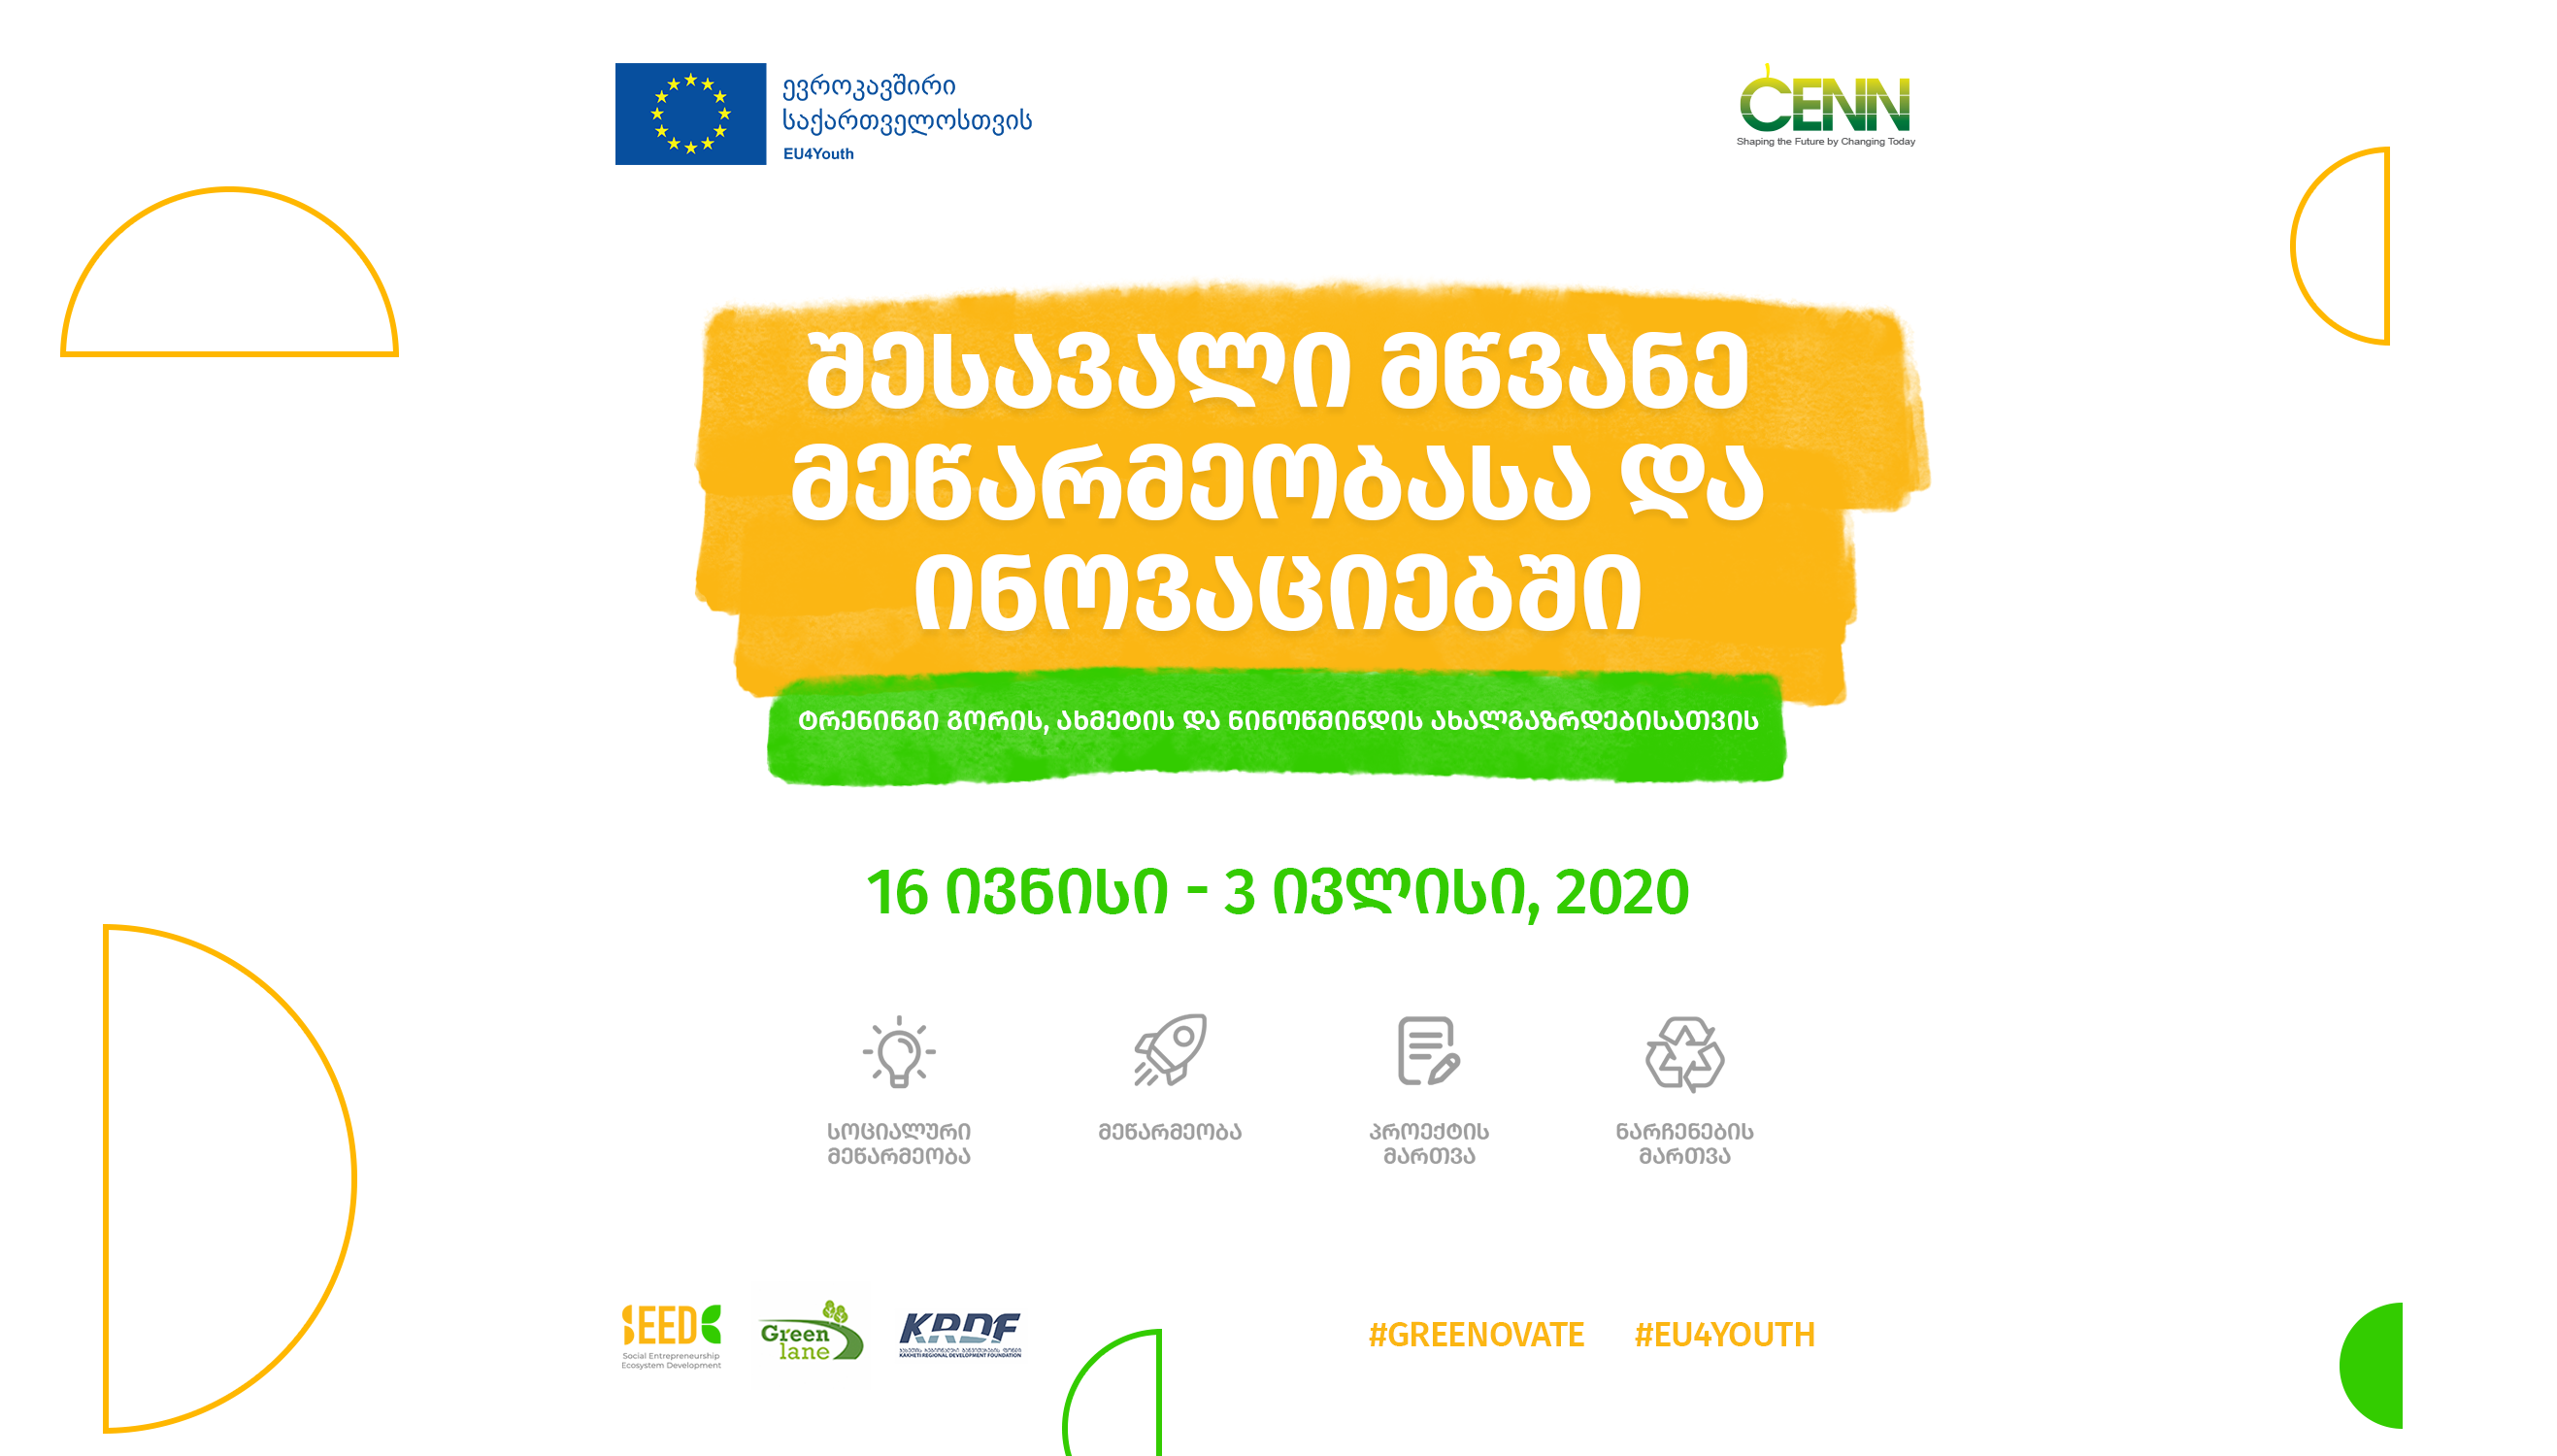 The training on Social Entrepreneurship and Green Innovation starts on June 16